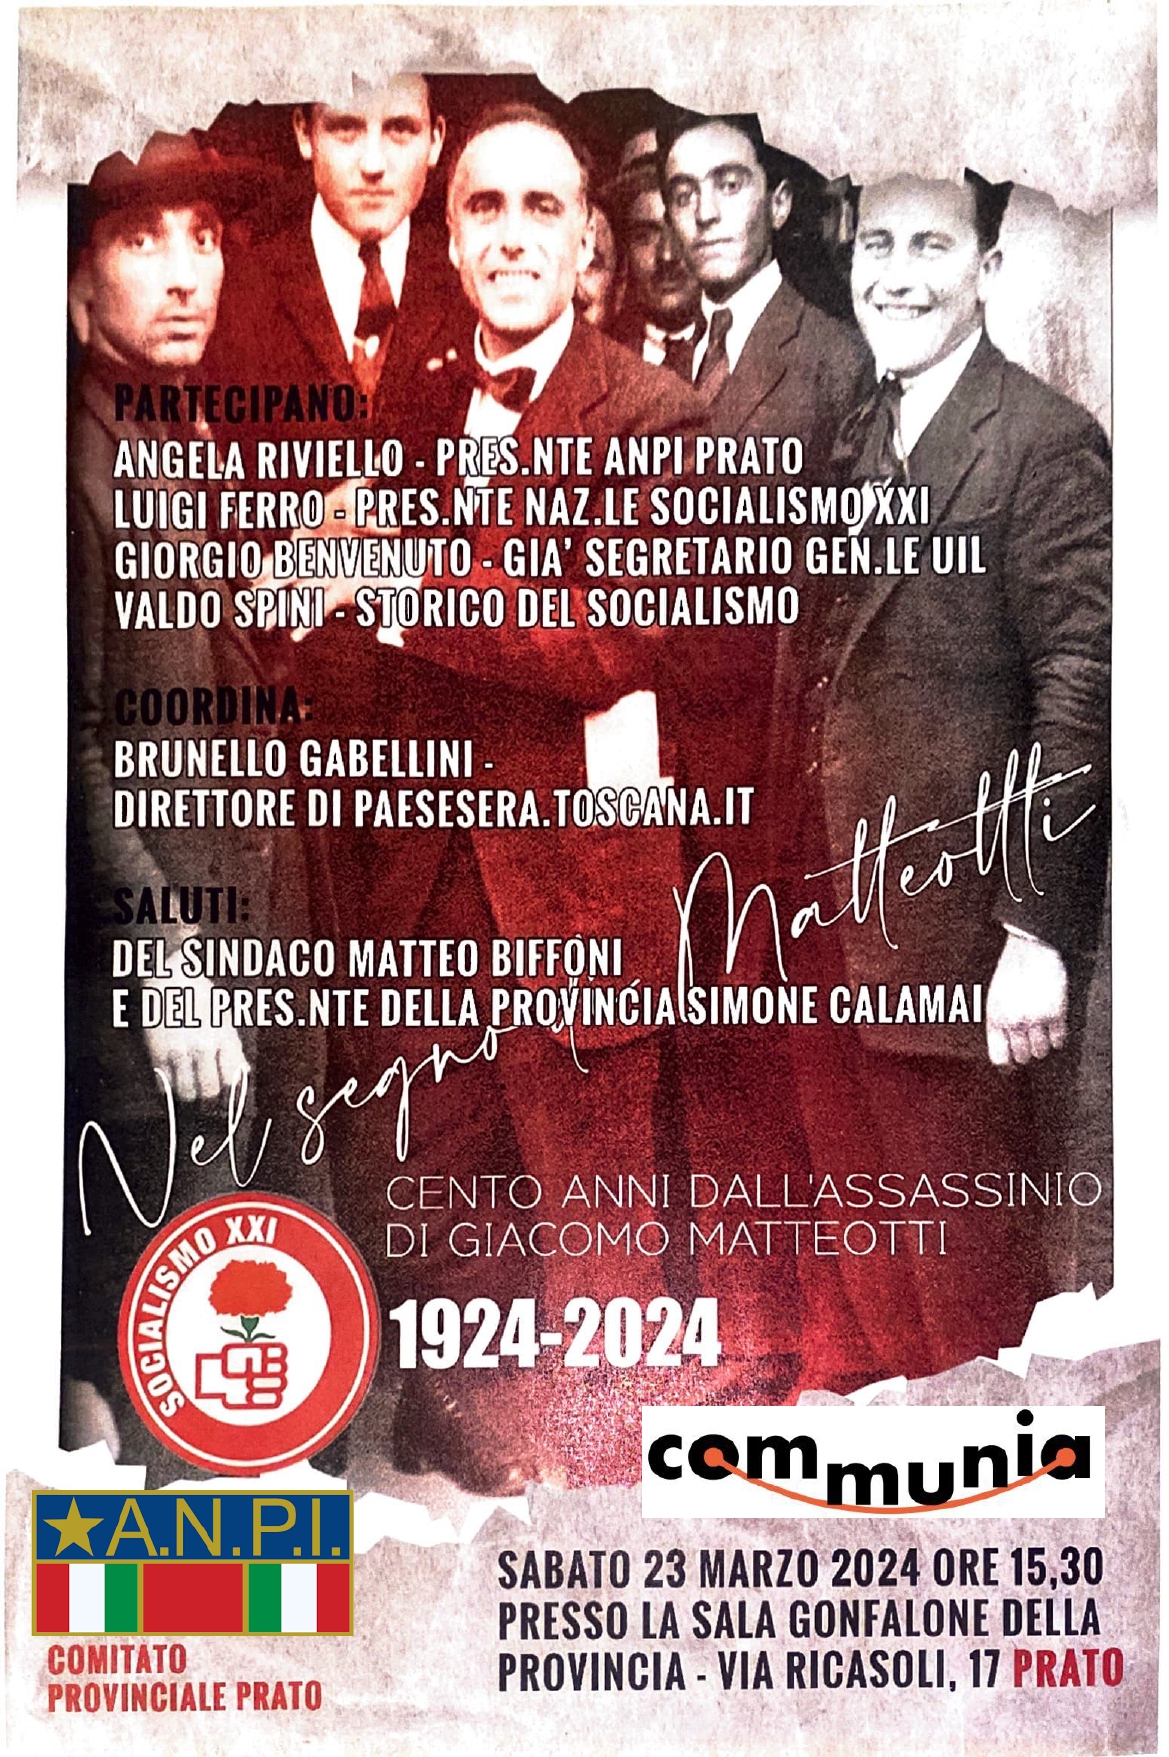 Cento anni dall’assassinio di Giacomo Matteotti: sabato 23 marzo iniziativa di ANPI, SocialismoXXI e Communia aps